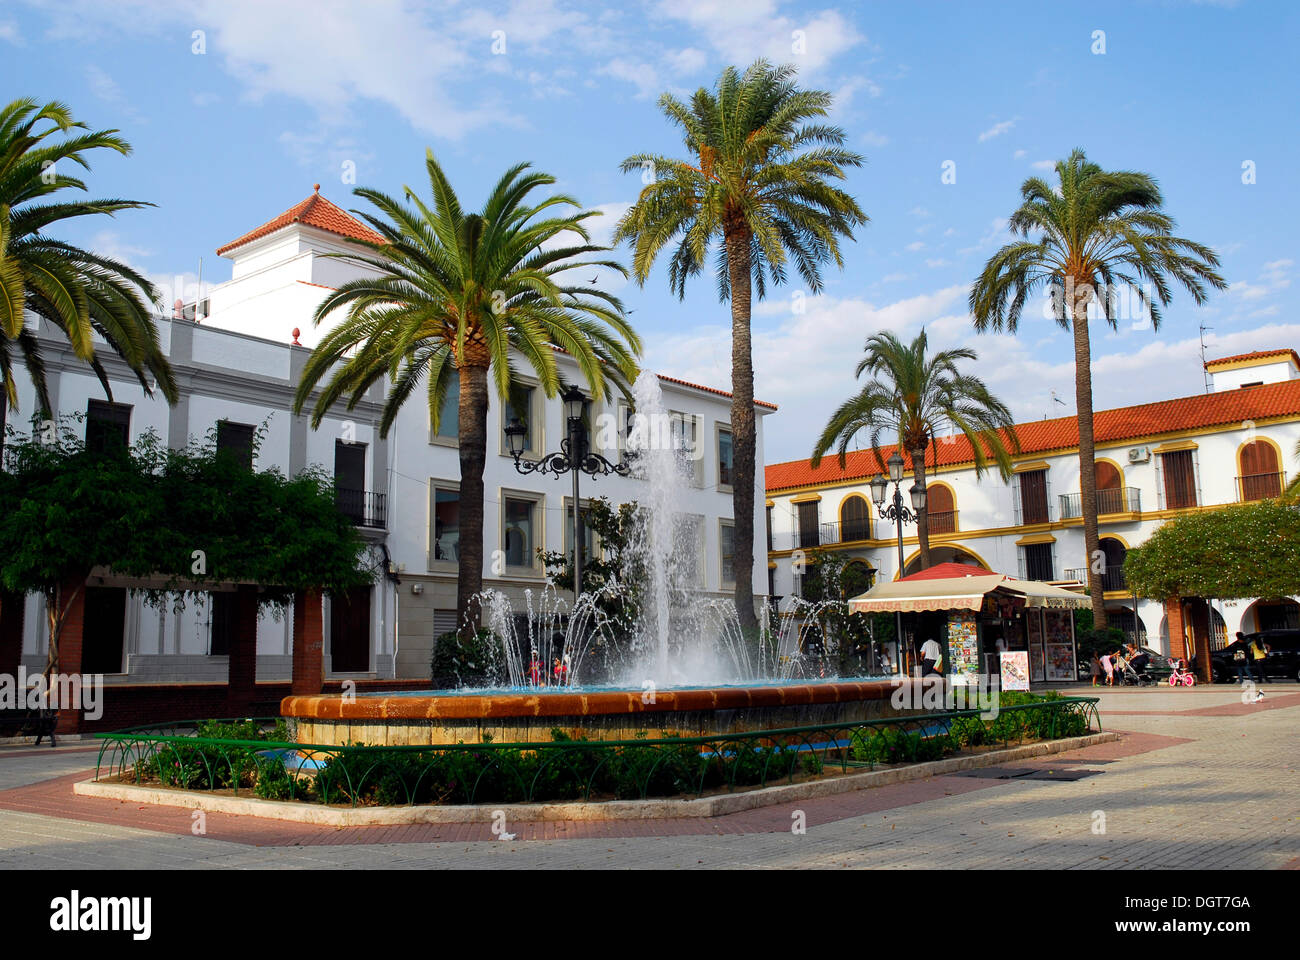 Piazza con la fontana e palme, la città vecchia di Lepe, Costa de la Luz, regione di Huelva, Andalusia, Spagna, Europa Foto Stock